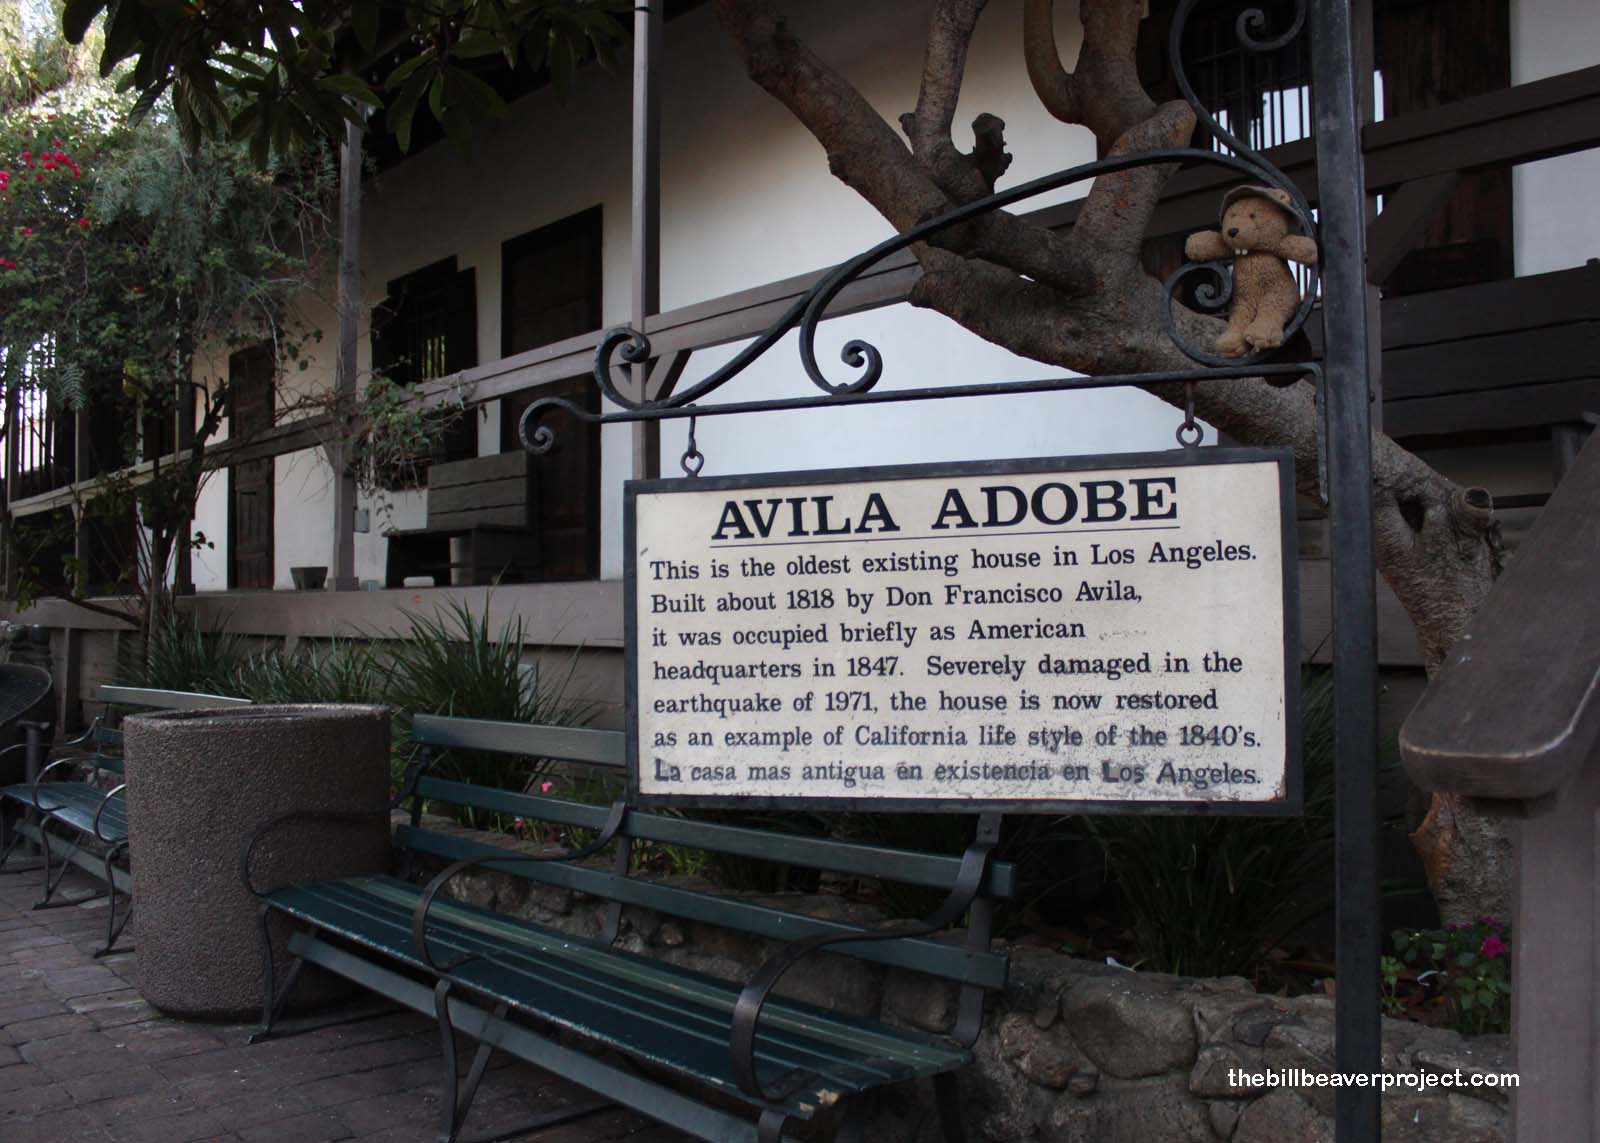 The Avila Adobe